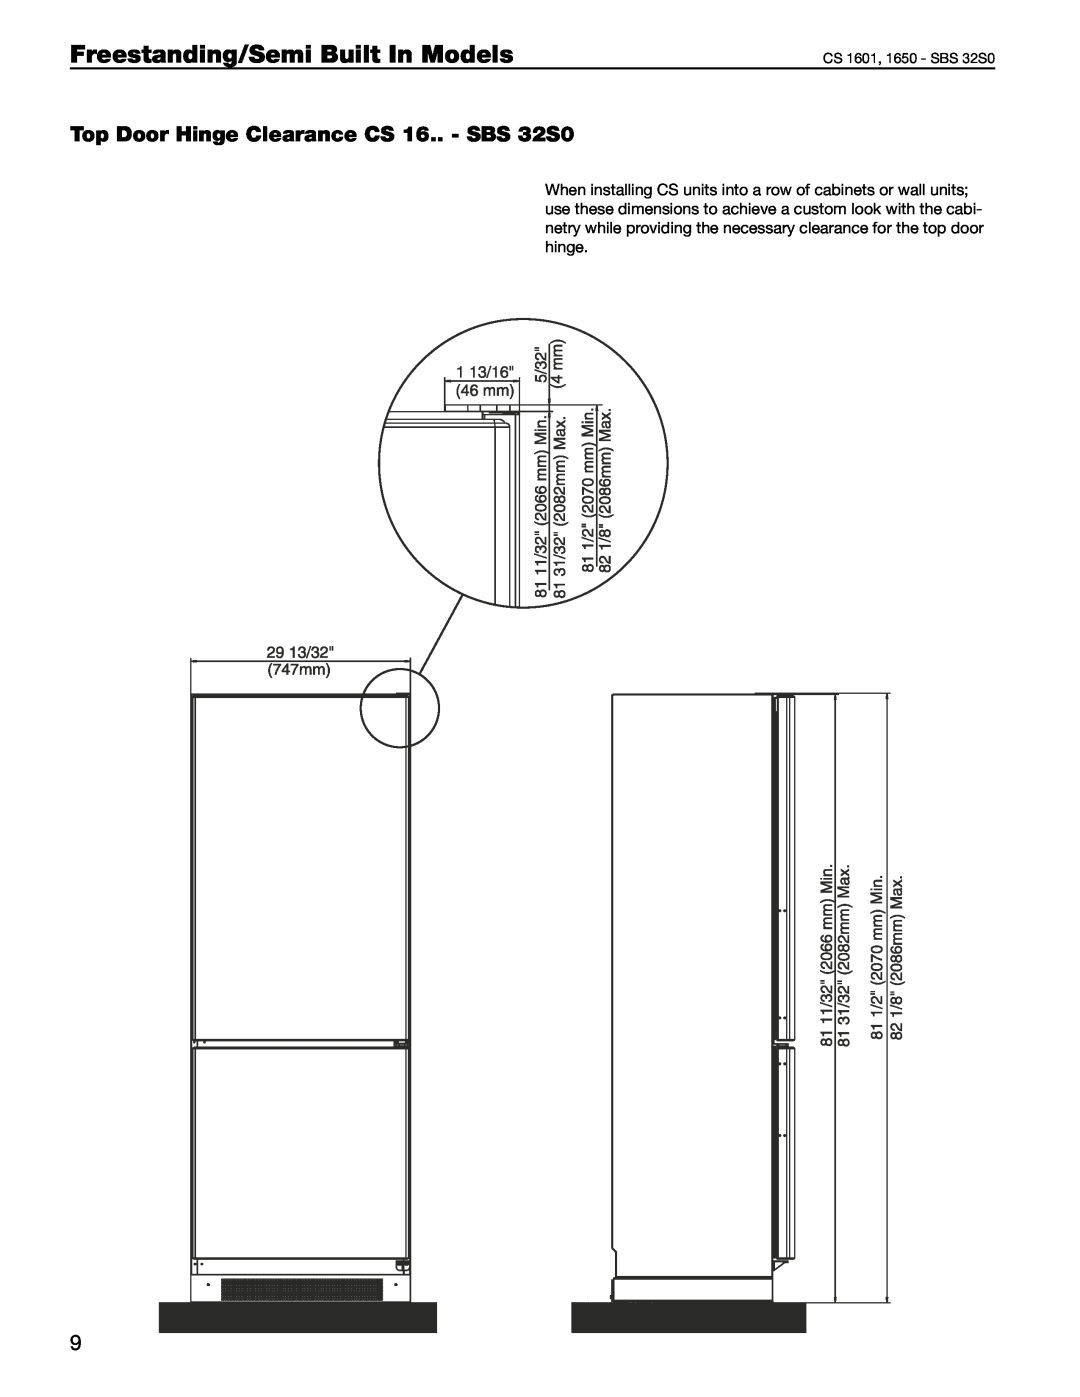 Liebherr manual Top Door Hinge Clearance CS 16.. - SBS 32S0, Freestanding/Semi Built In Models, CS 1601, 1650 - SBS 32S0 